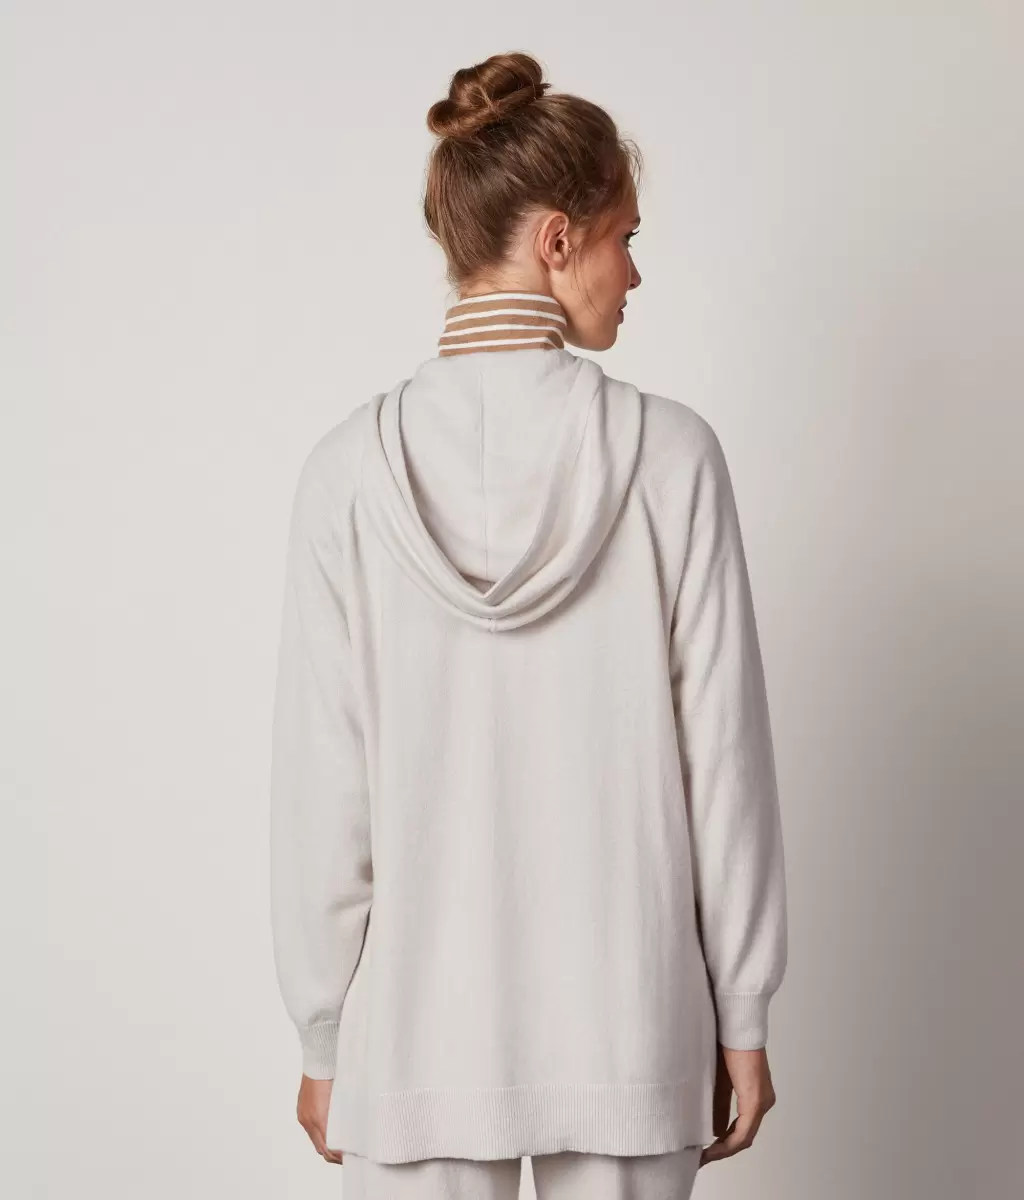 Falconeri Swetry Z Okrągłym Dekoltem Długa Bluza Z Kapturem Z Kaszmiru Ultrasoft White_Avorio Kobieta - 2